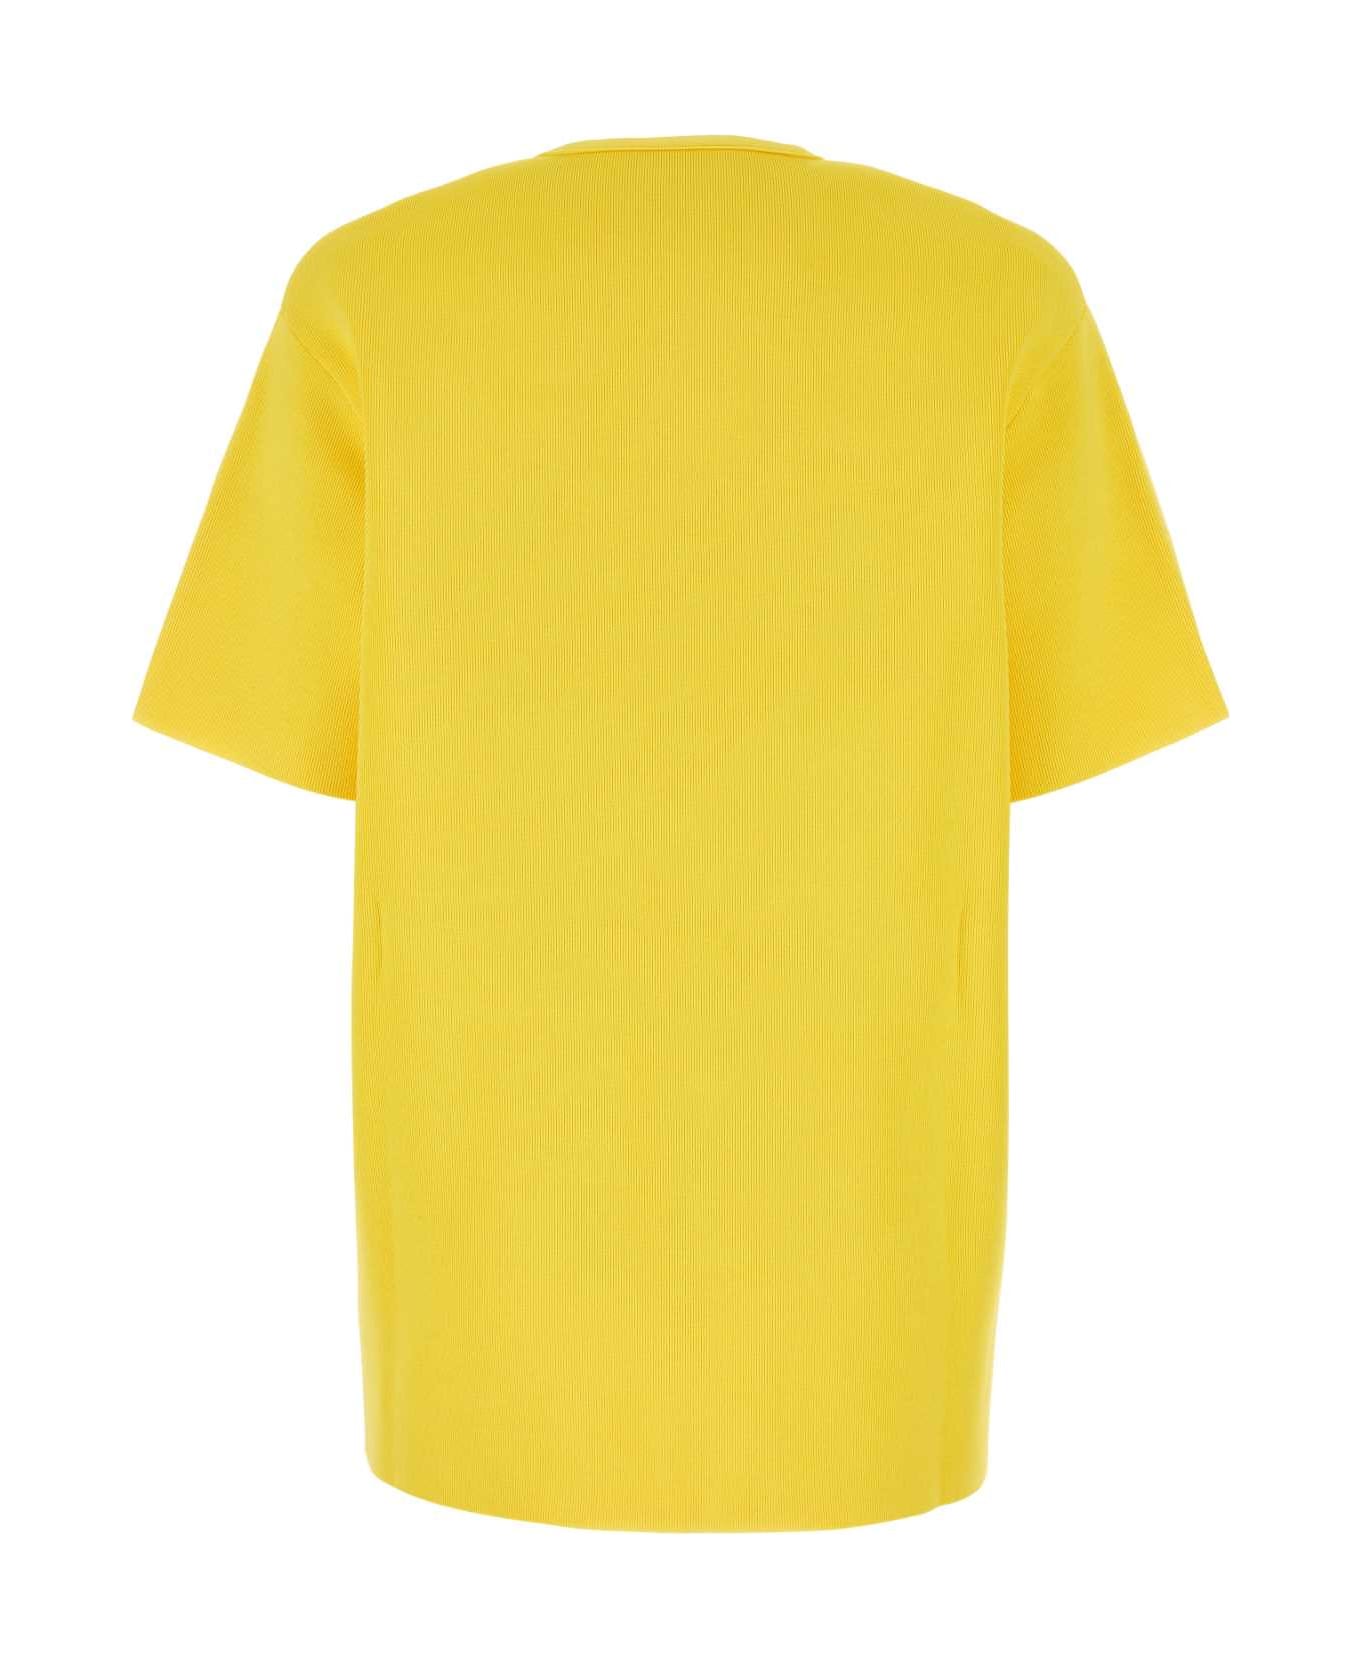 Jil Sander Yellow Viscose Blend T-shirt - 736